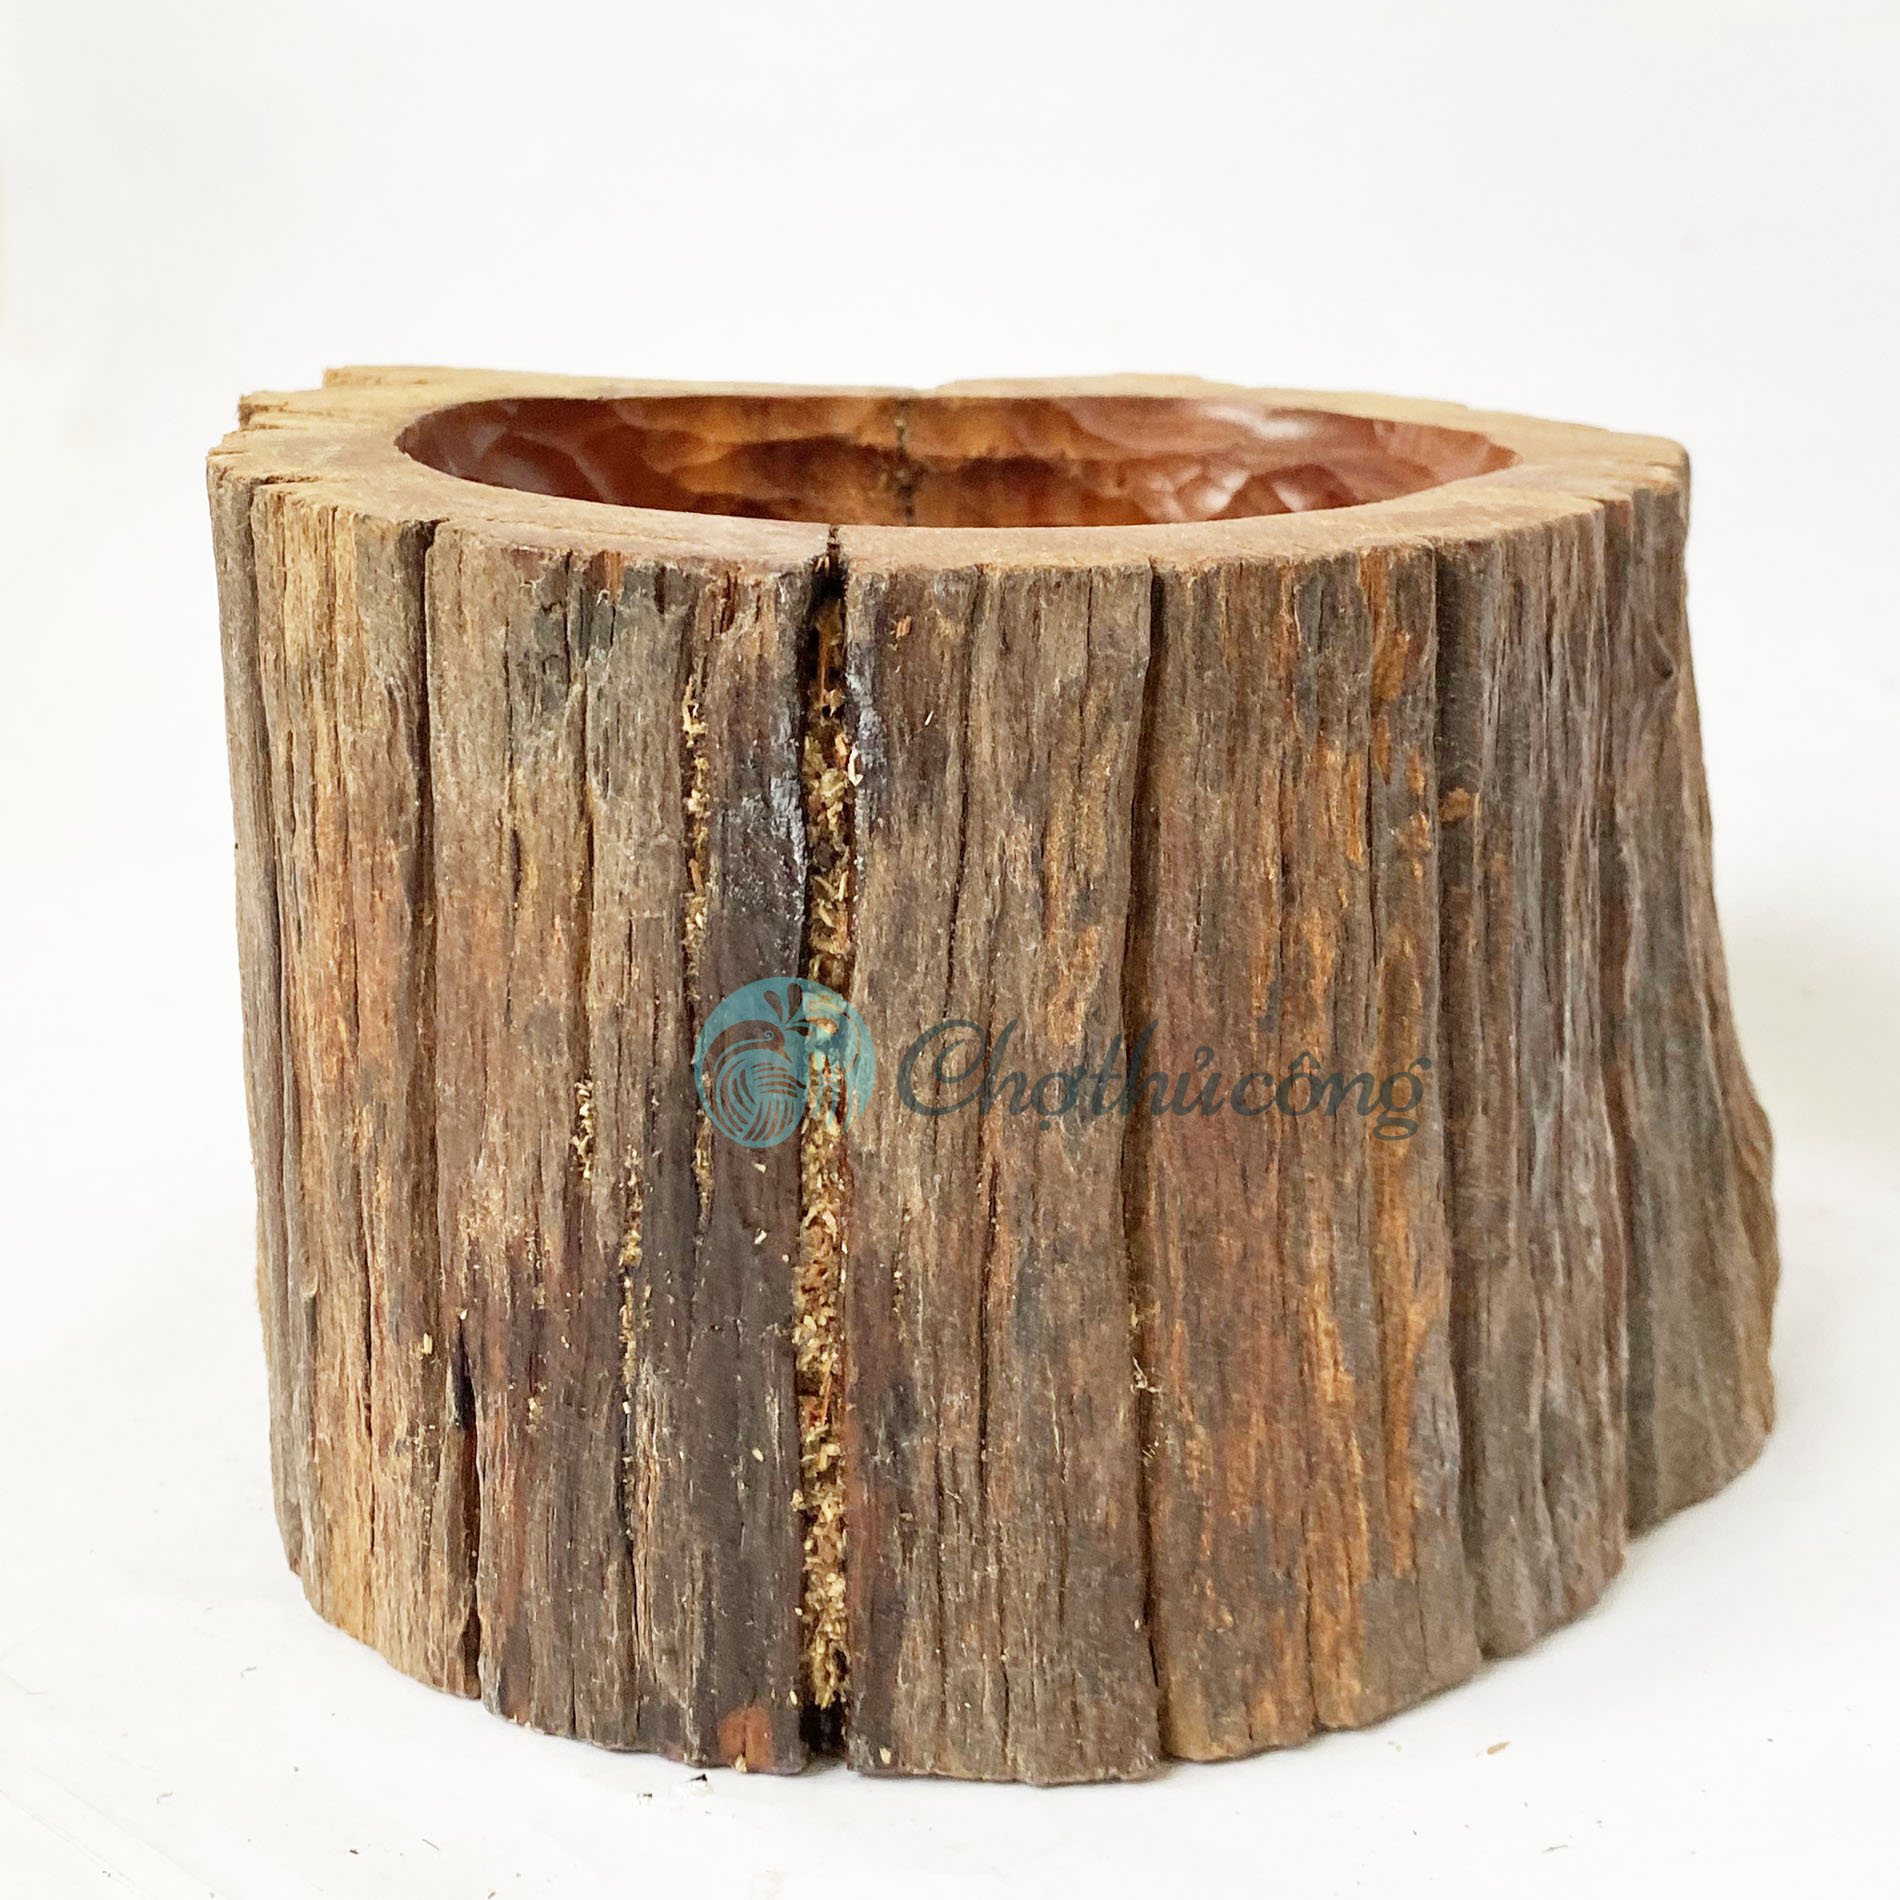 Chậu cây gỗ lũa tự nhiên cứng bền - Chậu gỗ trồng cây, chậu trồng sen đá lũa gỗ decor trang trí vintage (phát mẫu ngẫu nhiên)